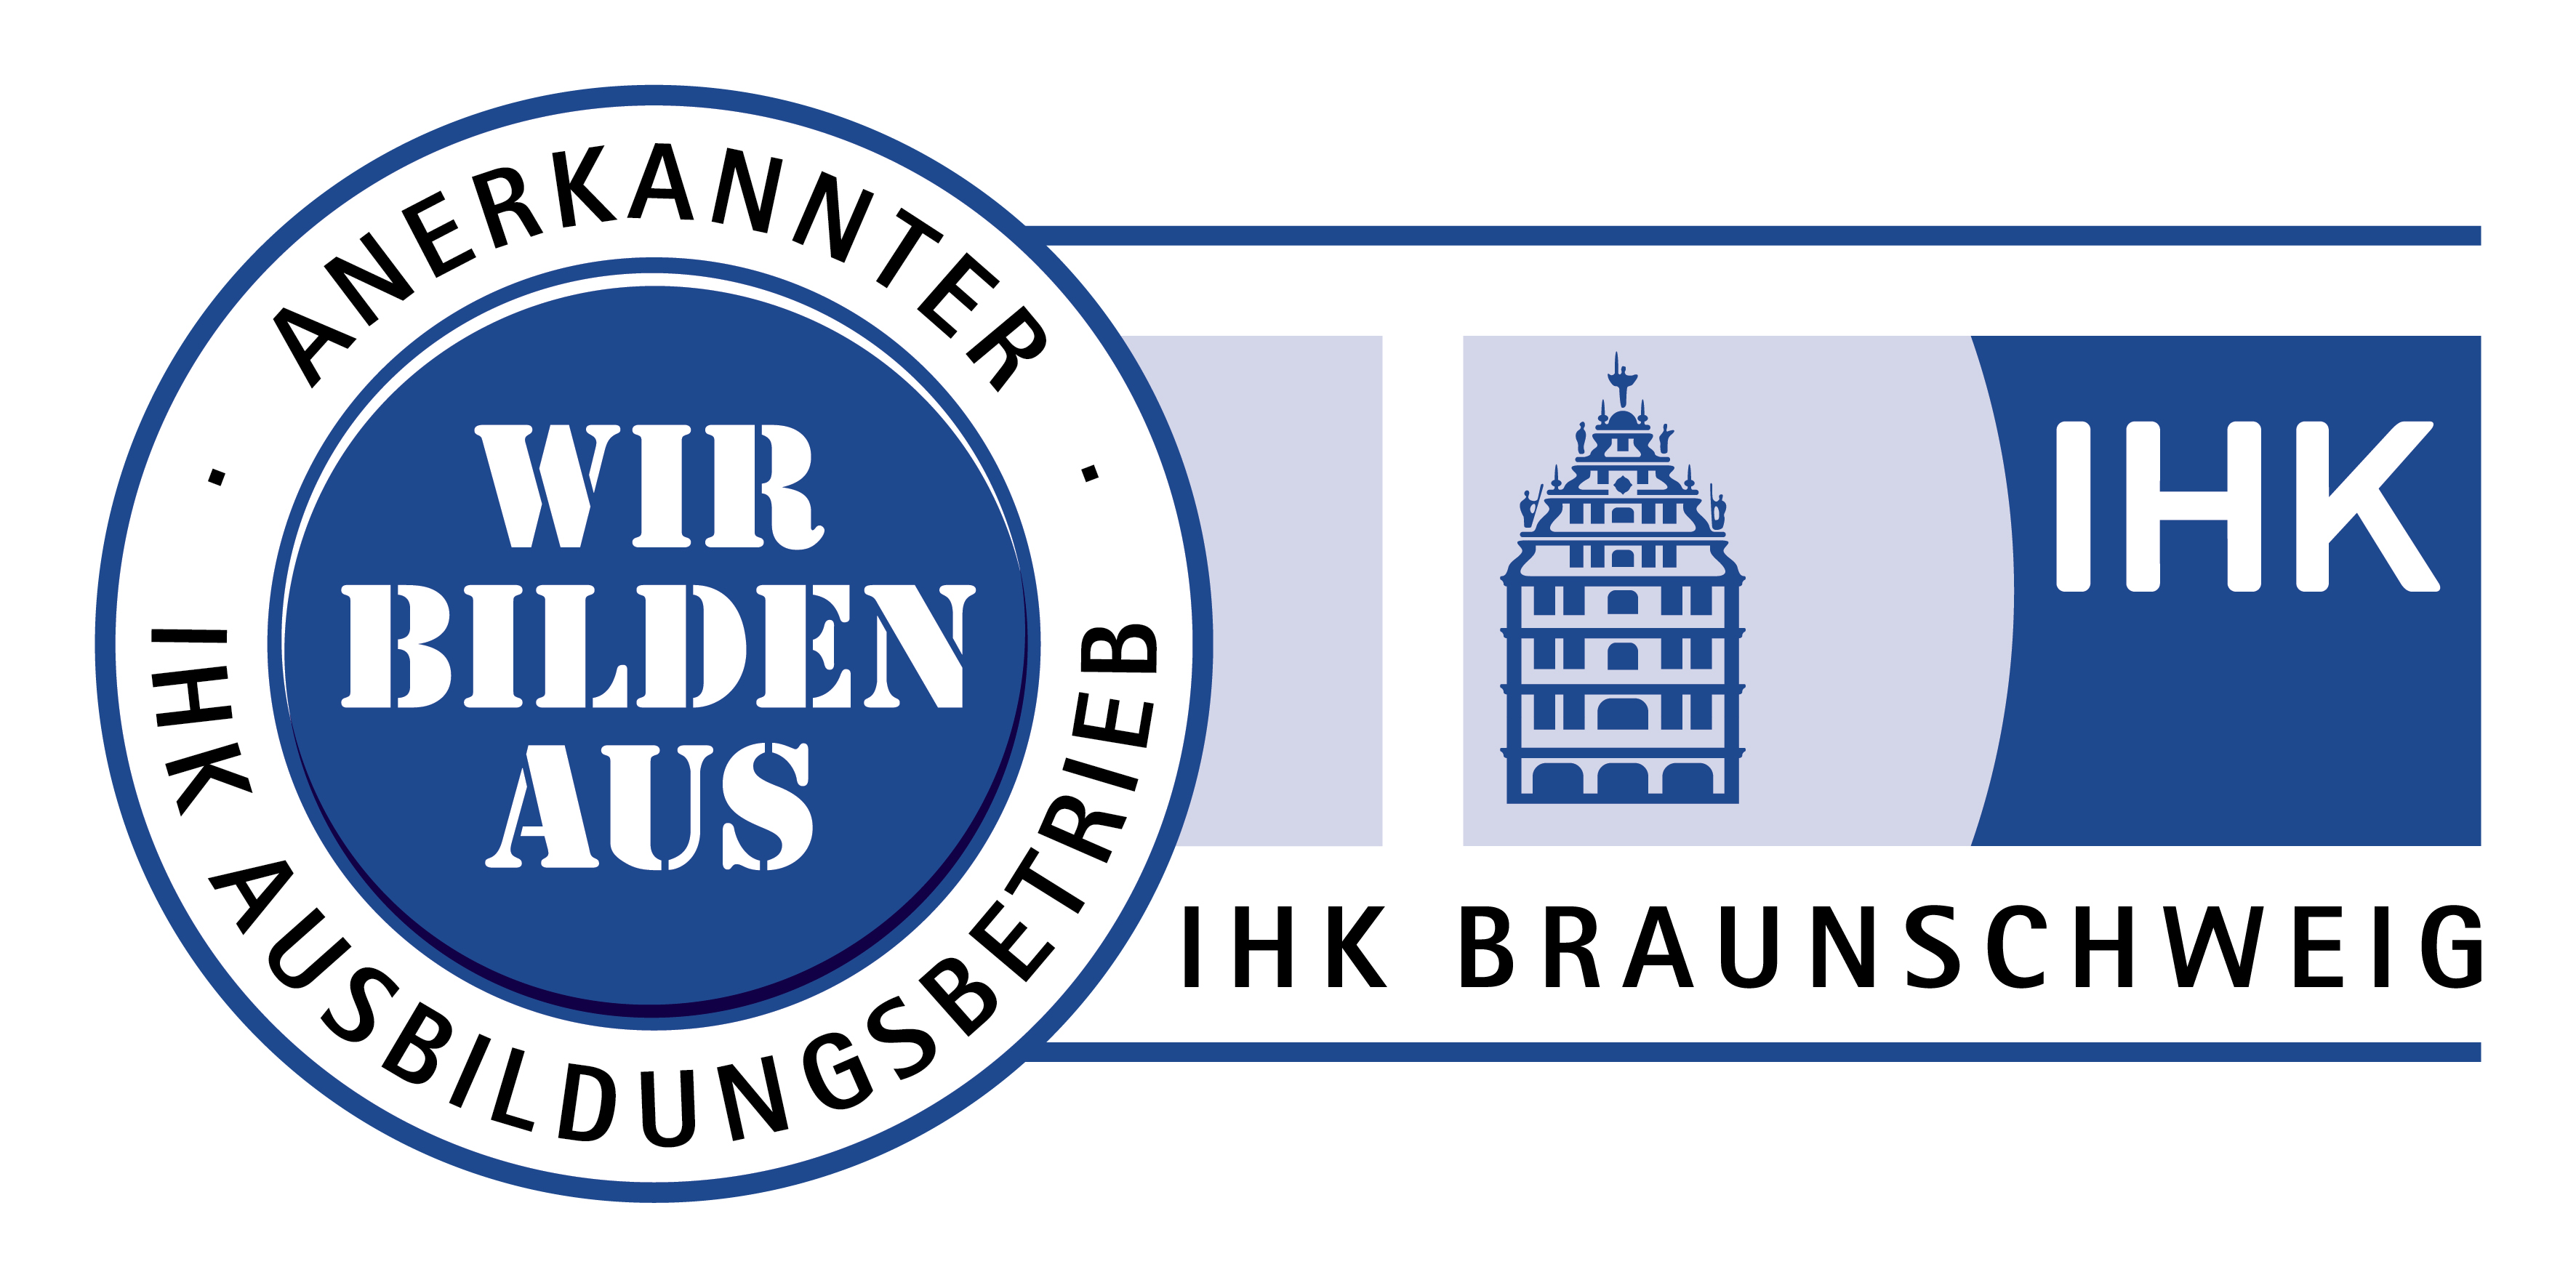 Die bmp GmbH ist anerkannter IHK Ausbildungsbetrieb